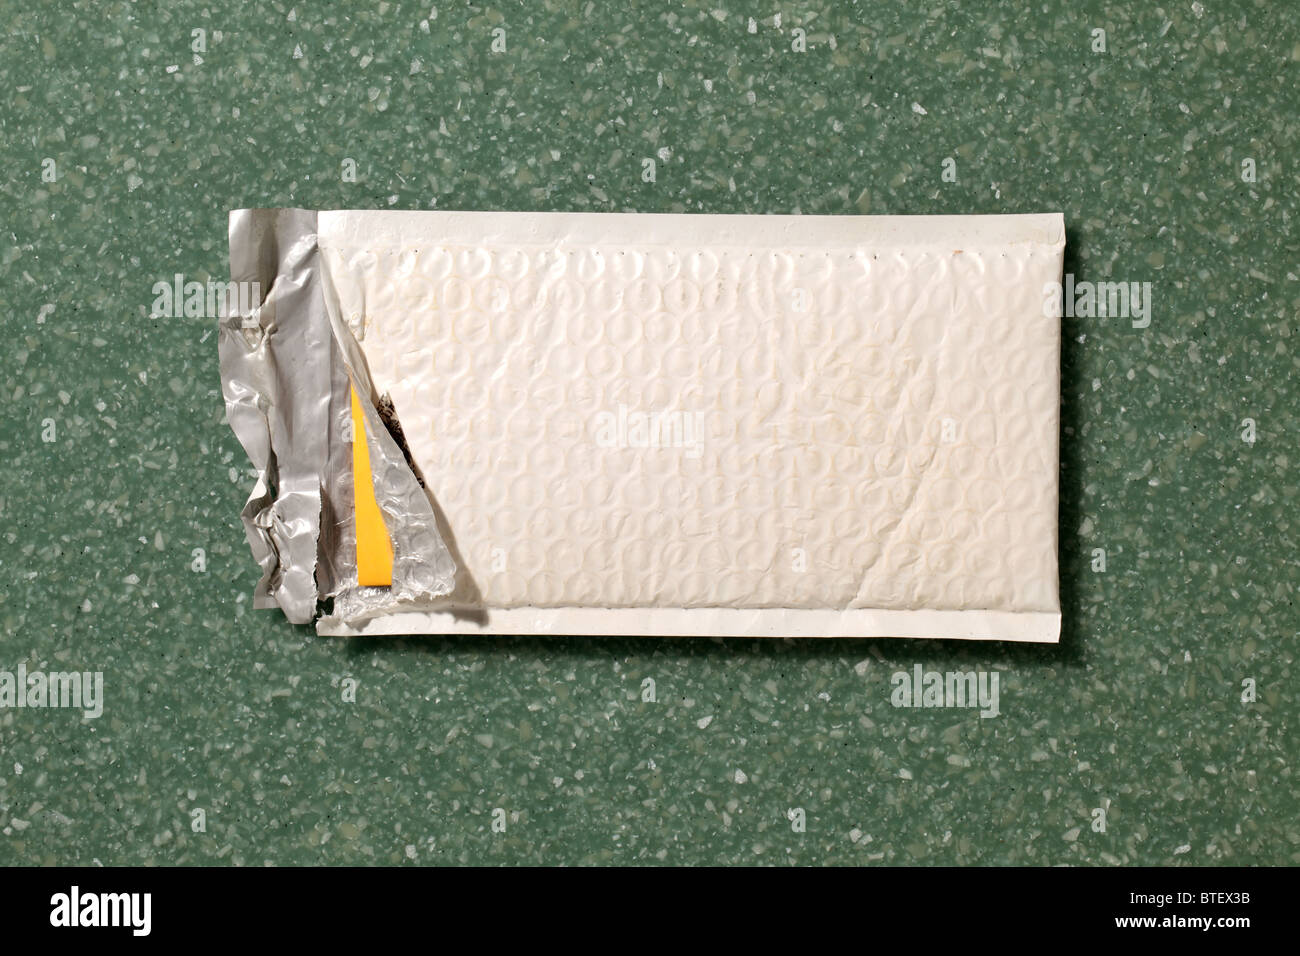 Une enveloppe postale postal utilisé à ouvrir. Compteur de page contexte mouchetée vert Banque D'Images